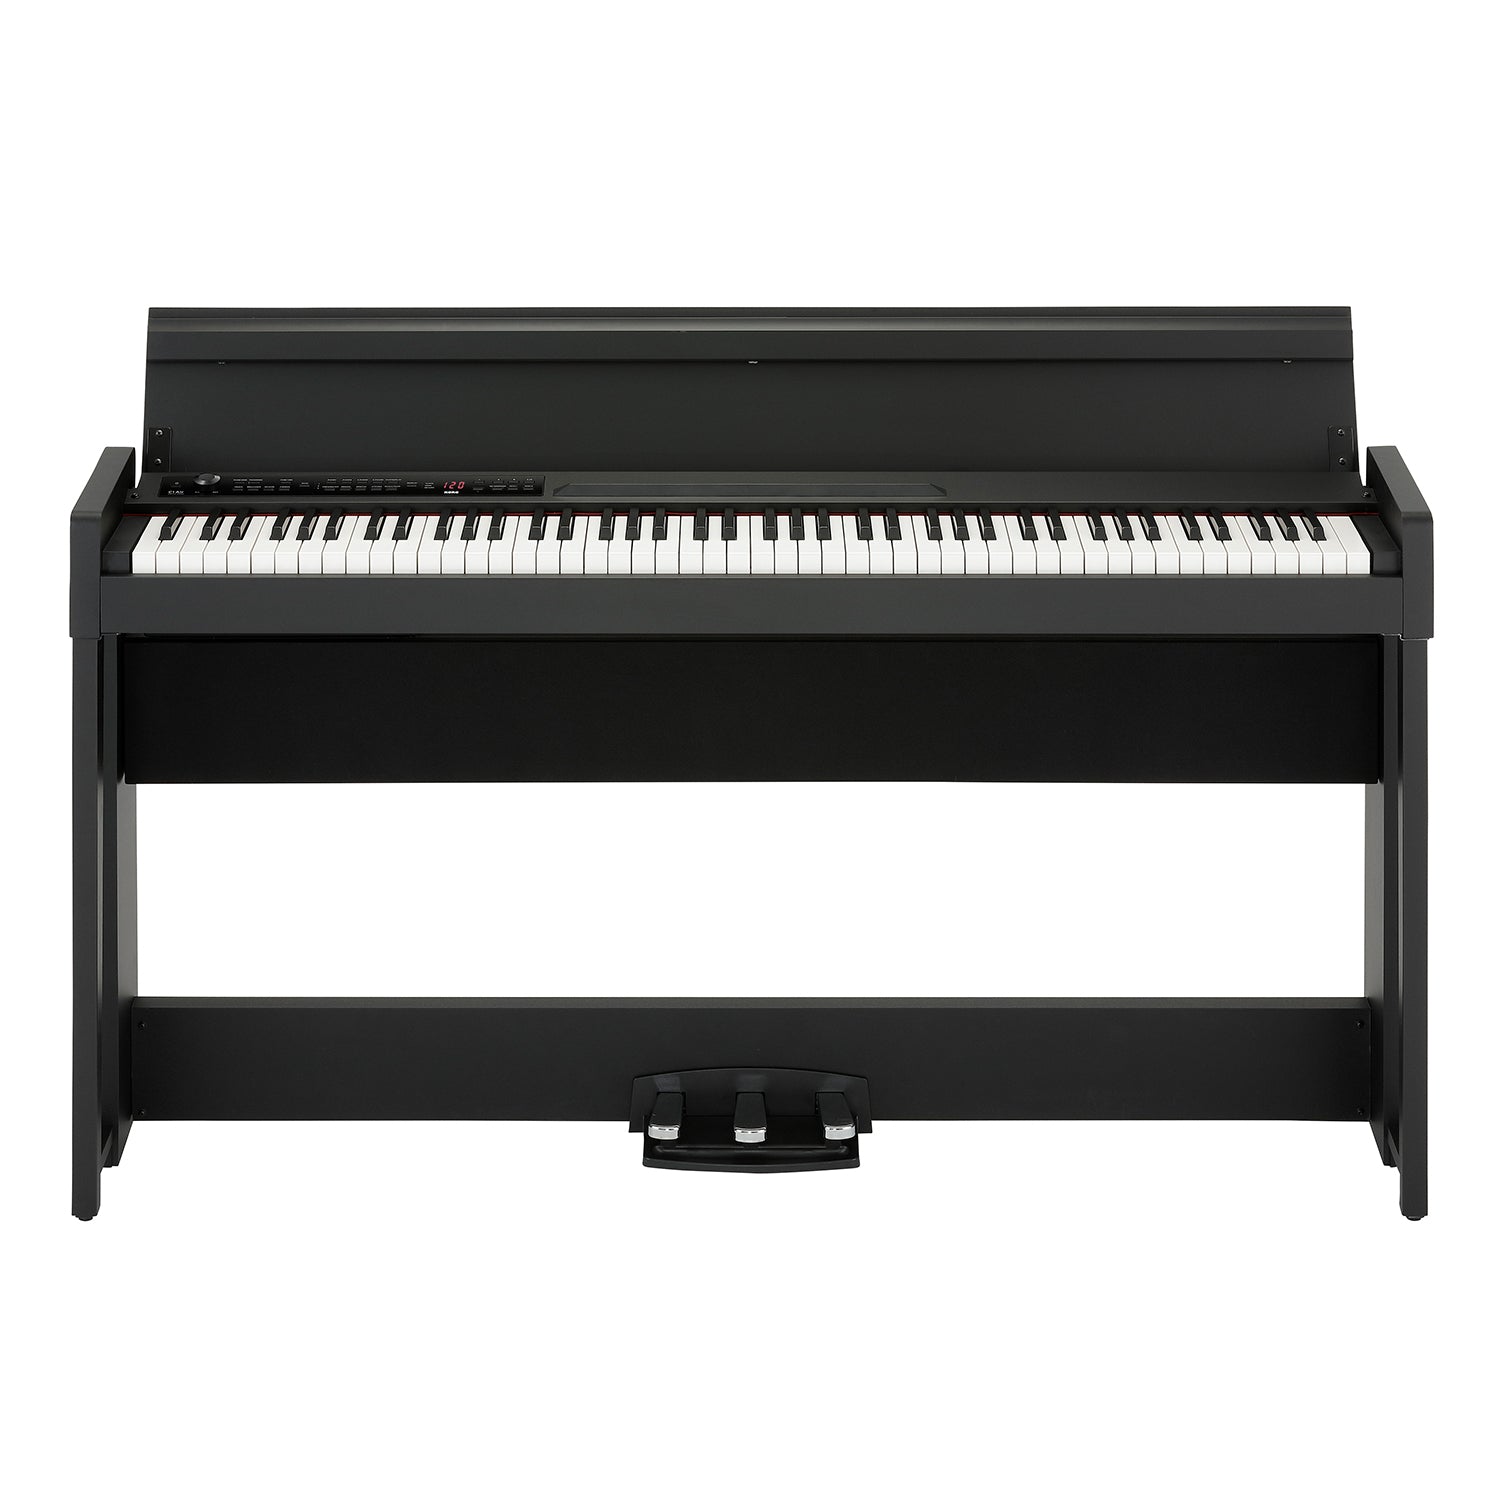 C1 Air Digital Piano - Black KORG USA Official Store